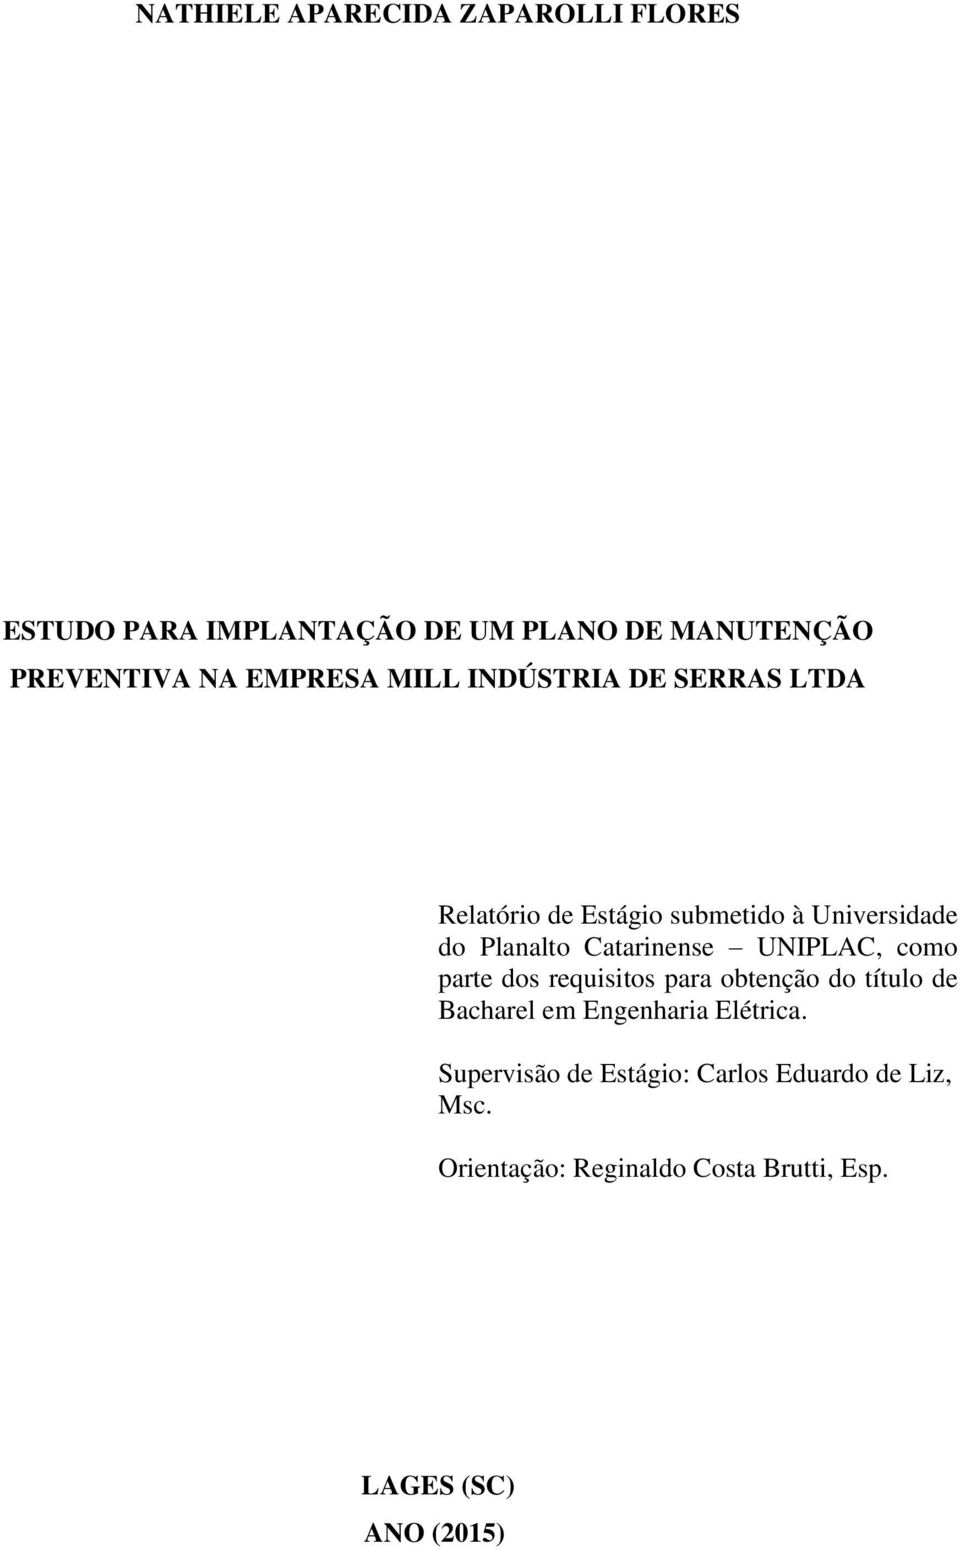 Catarinense UNIPLAC, como parte dos requisitos para obtenção do título de Bacharel em Engenharia